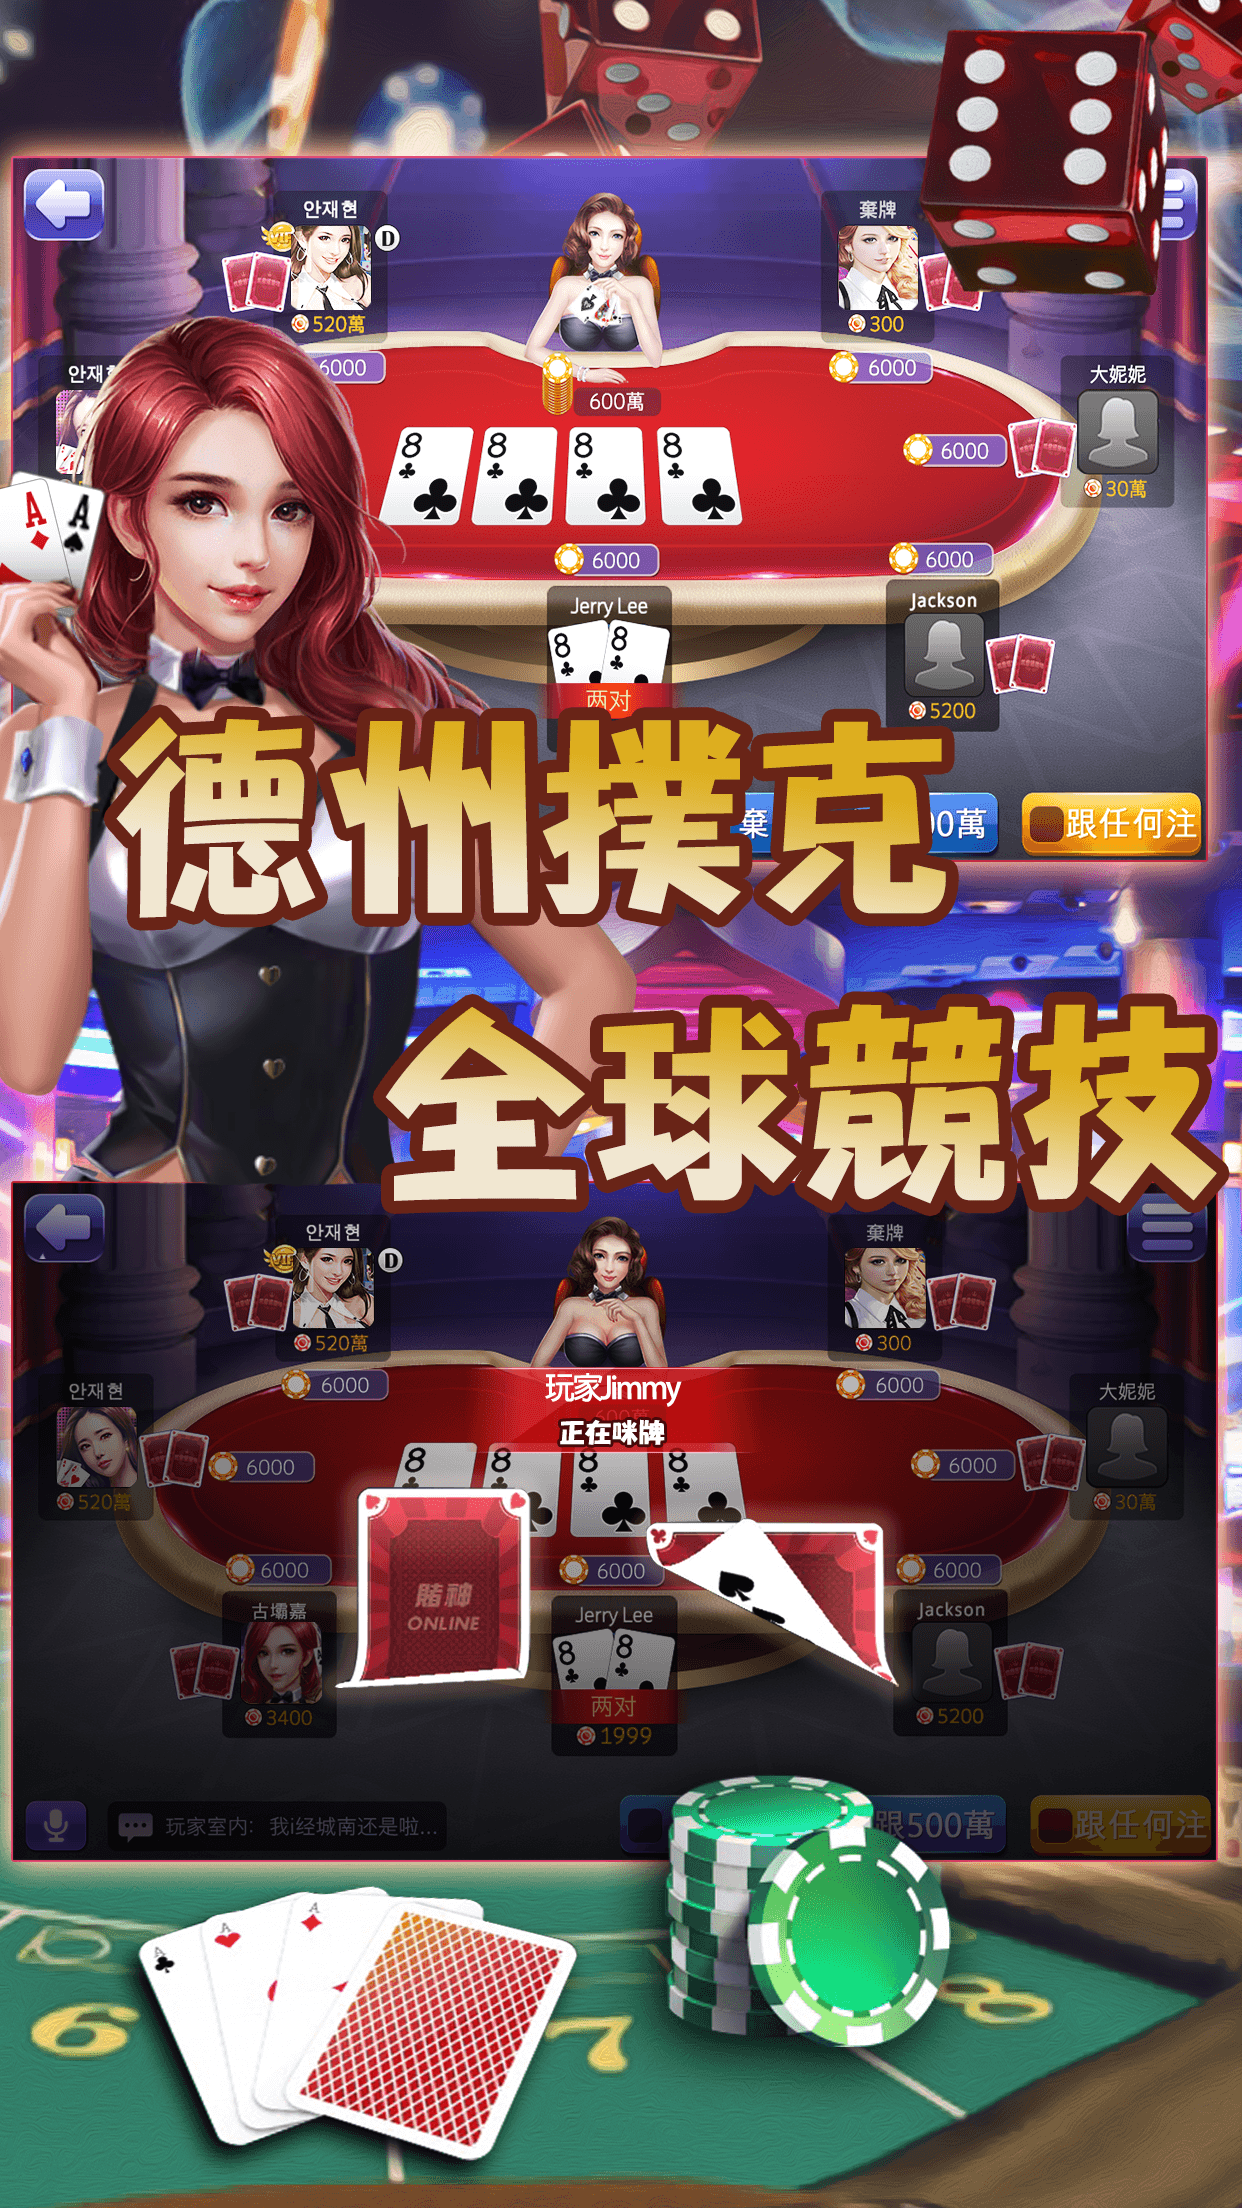 Free Slot Poker Games Online